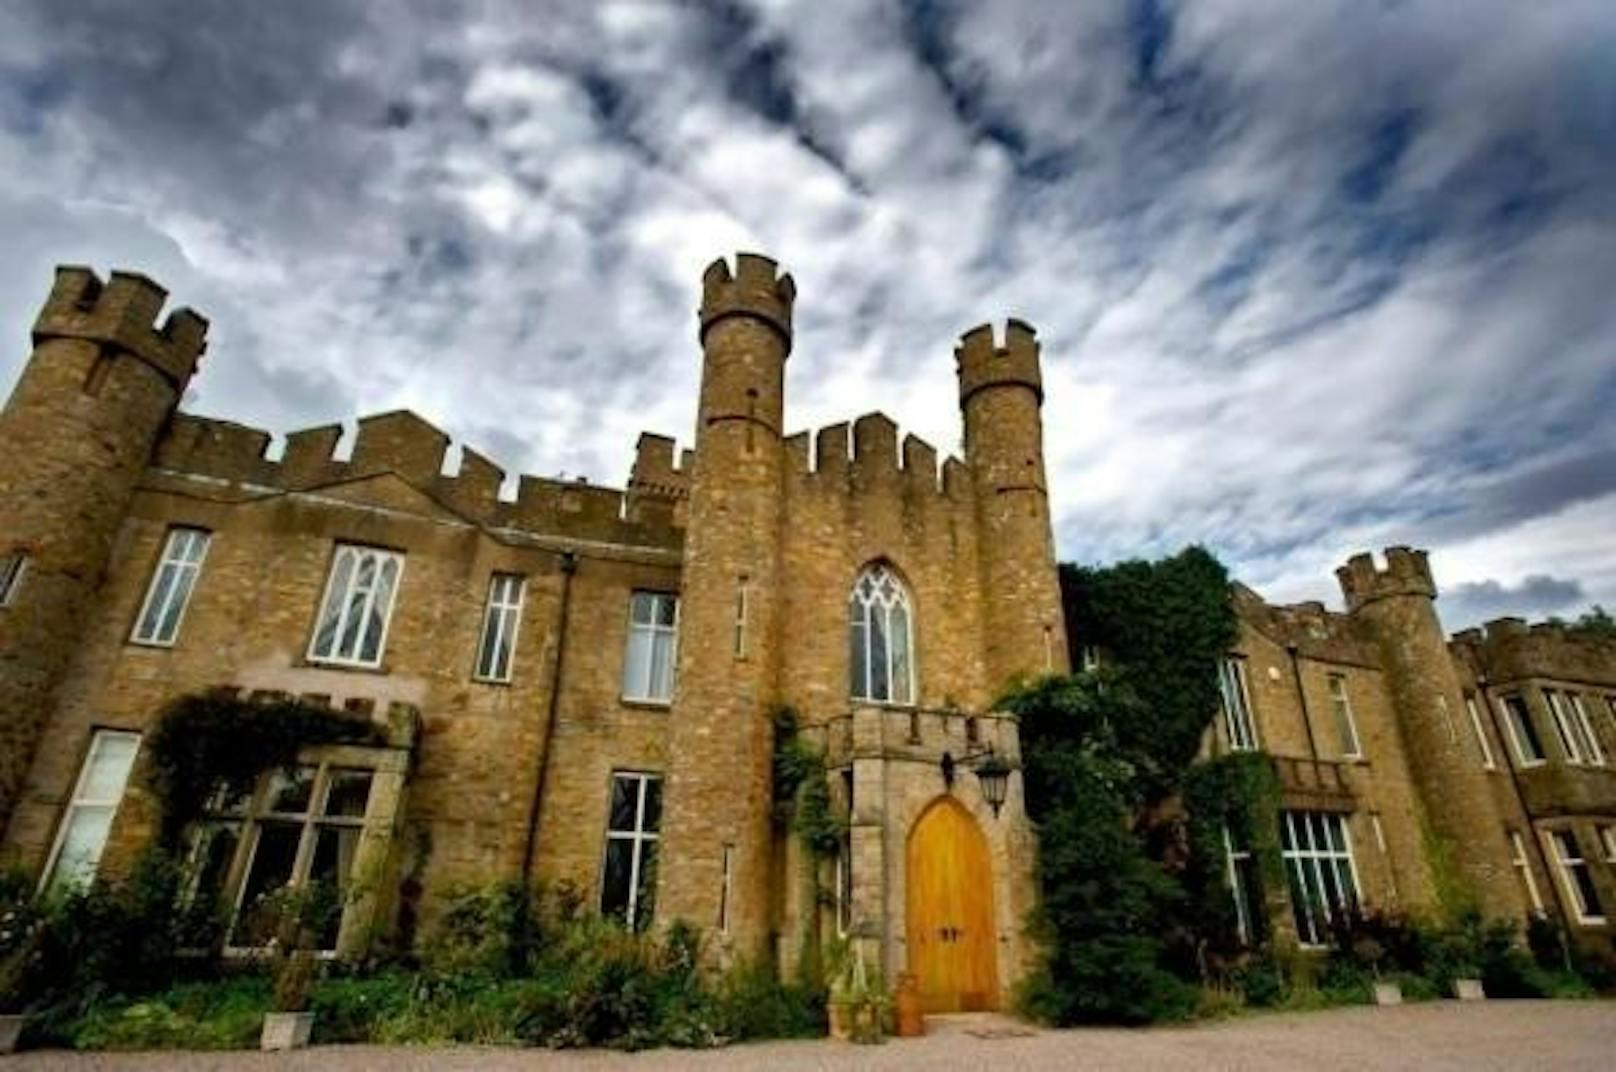 <b>Augill Castle, Eden Valley, England</b>
In diesem Schloss in Cumbria, einer Grafschaft im Nordwesten von England, können Sie in einem von 15 Zimmern übernachten.